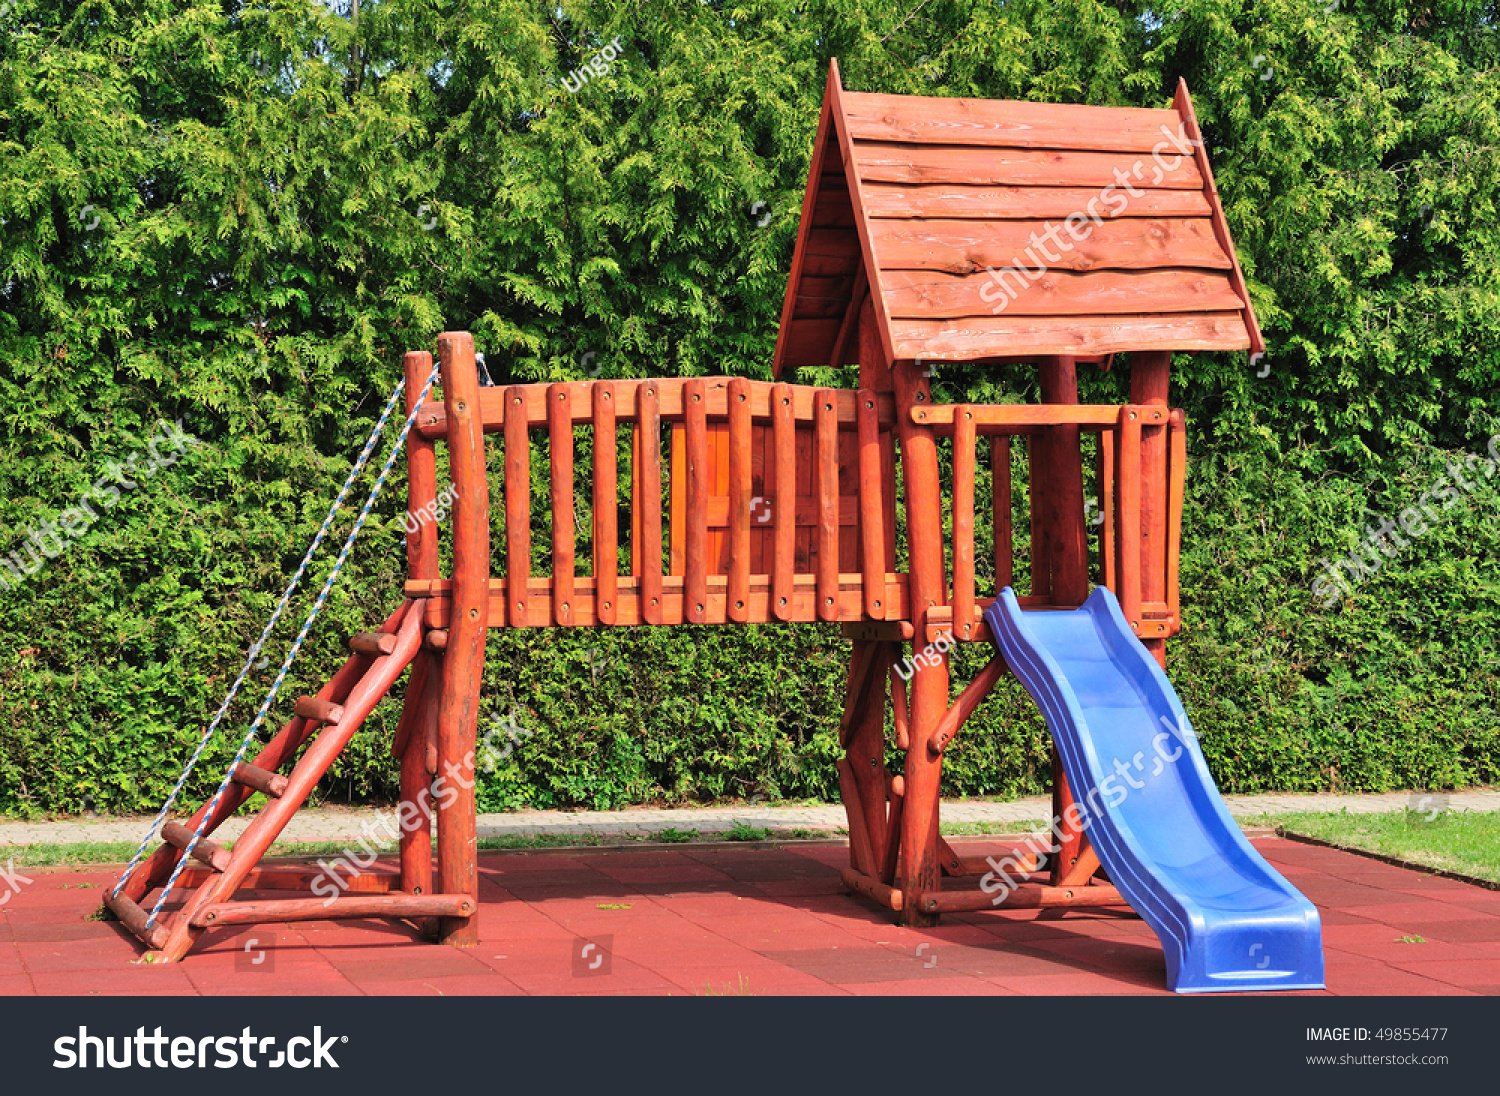 Wooden Playground Equipment Blue Slides Summer Stock Photo